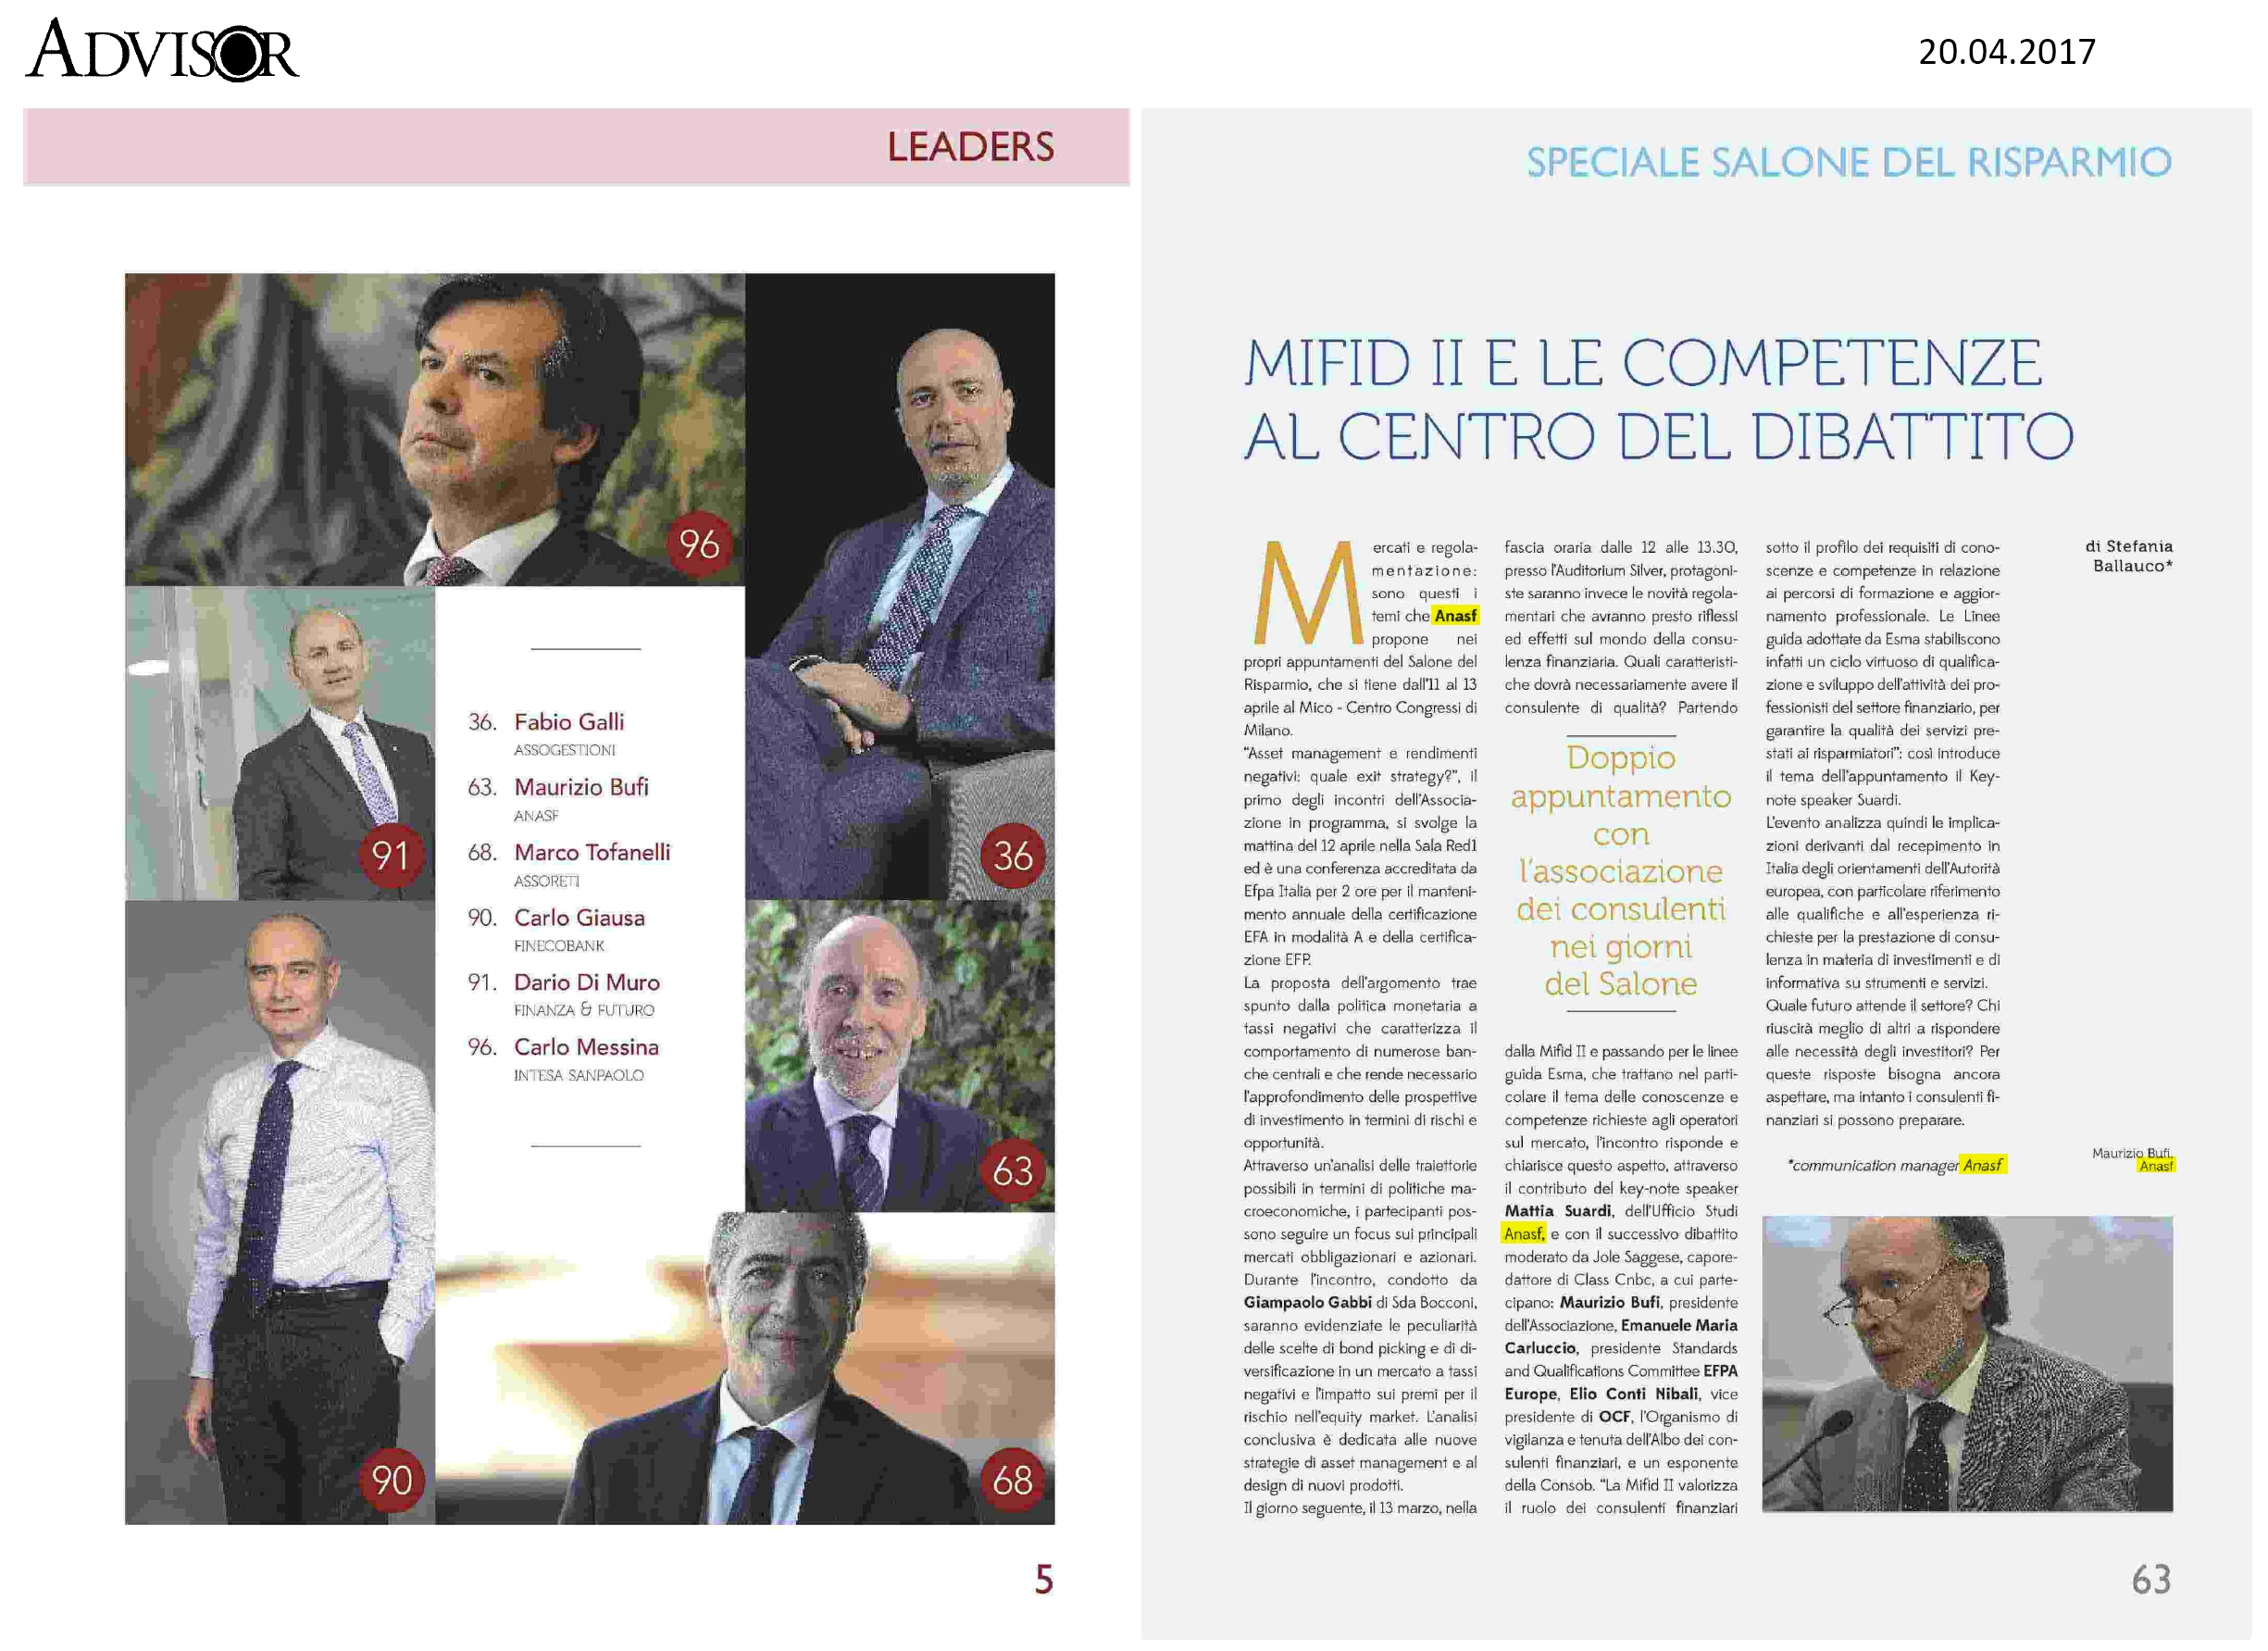 MiFID II e le competenze al centro del dibattito